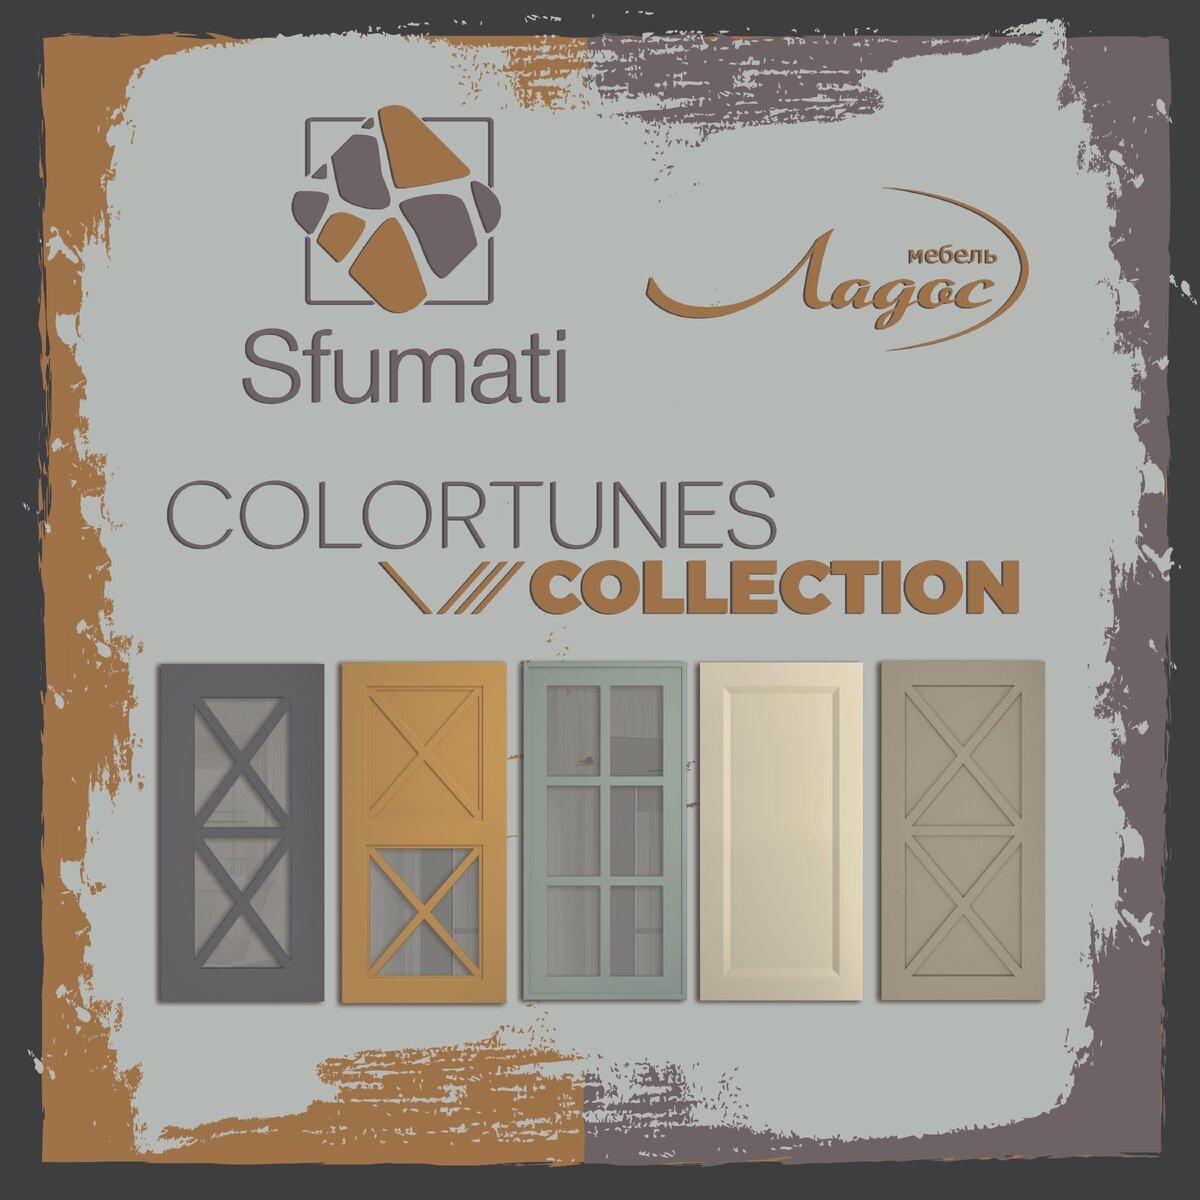 Уважаемые коллеги !
Хотим сообщить, что новая коллекцию интерьерных декоров эмали "Sfumati" полностью введена в производство.-2